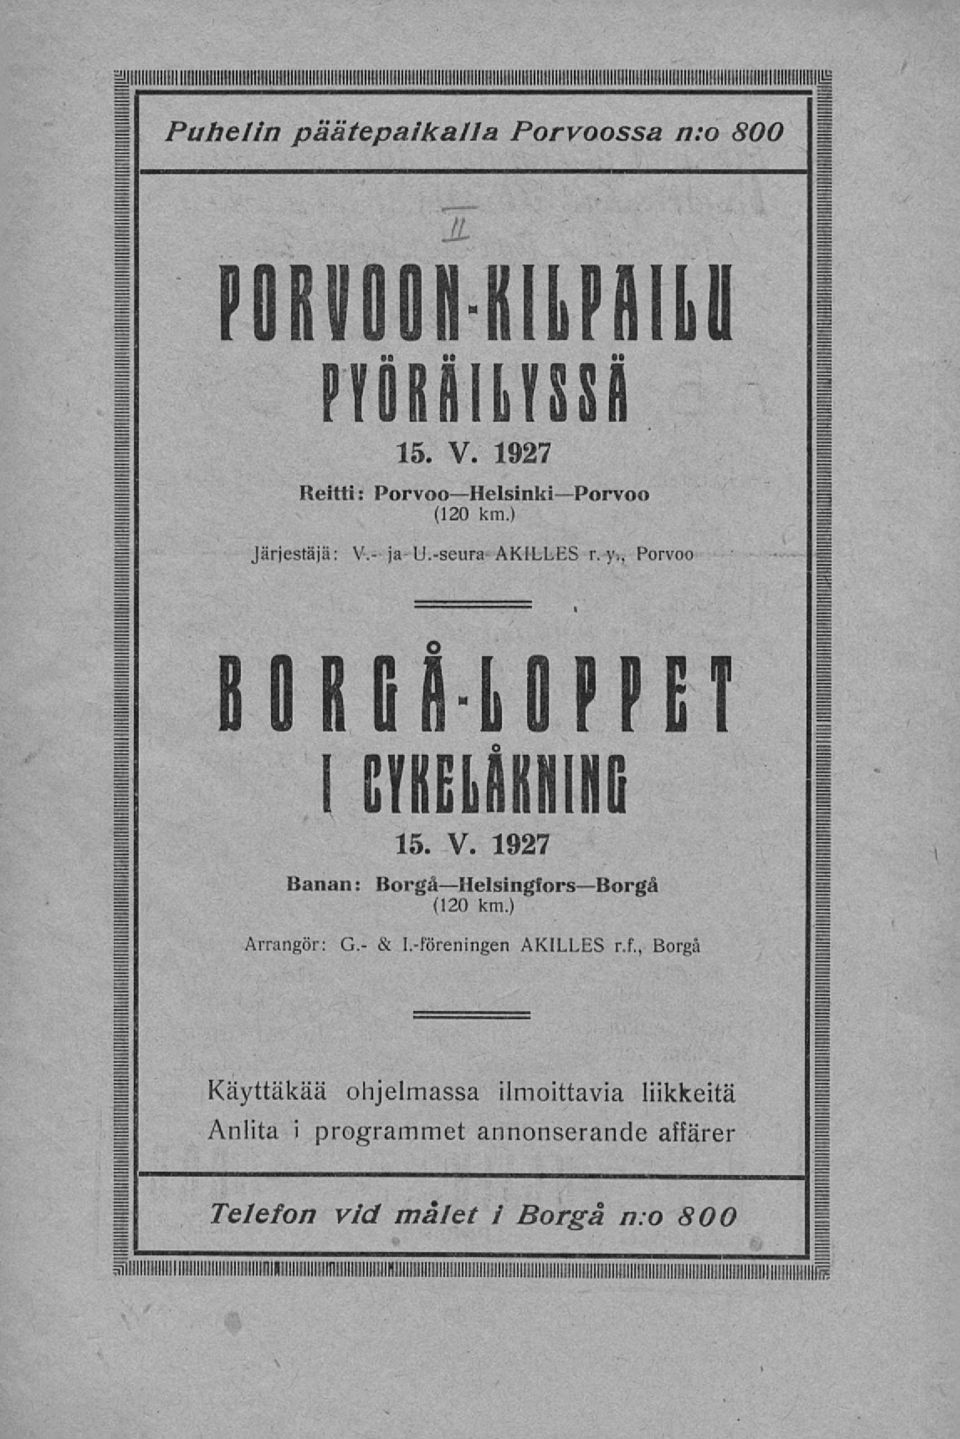 , Porvoo BORGå LOPPET CrKELRKHinG 15. V. 1927 Banan: BorgåHelsingforsBorgå (120 km.) Arrangör: G. & 1.